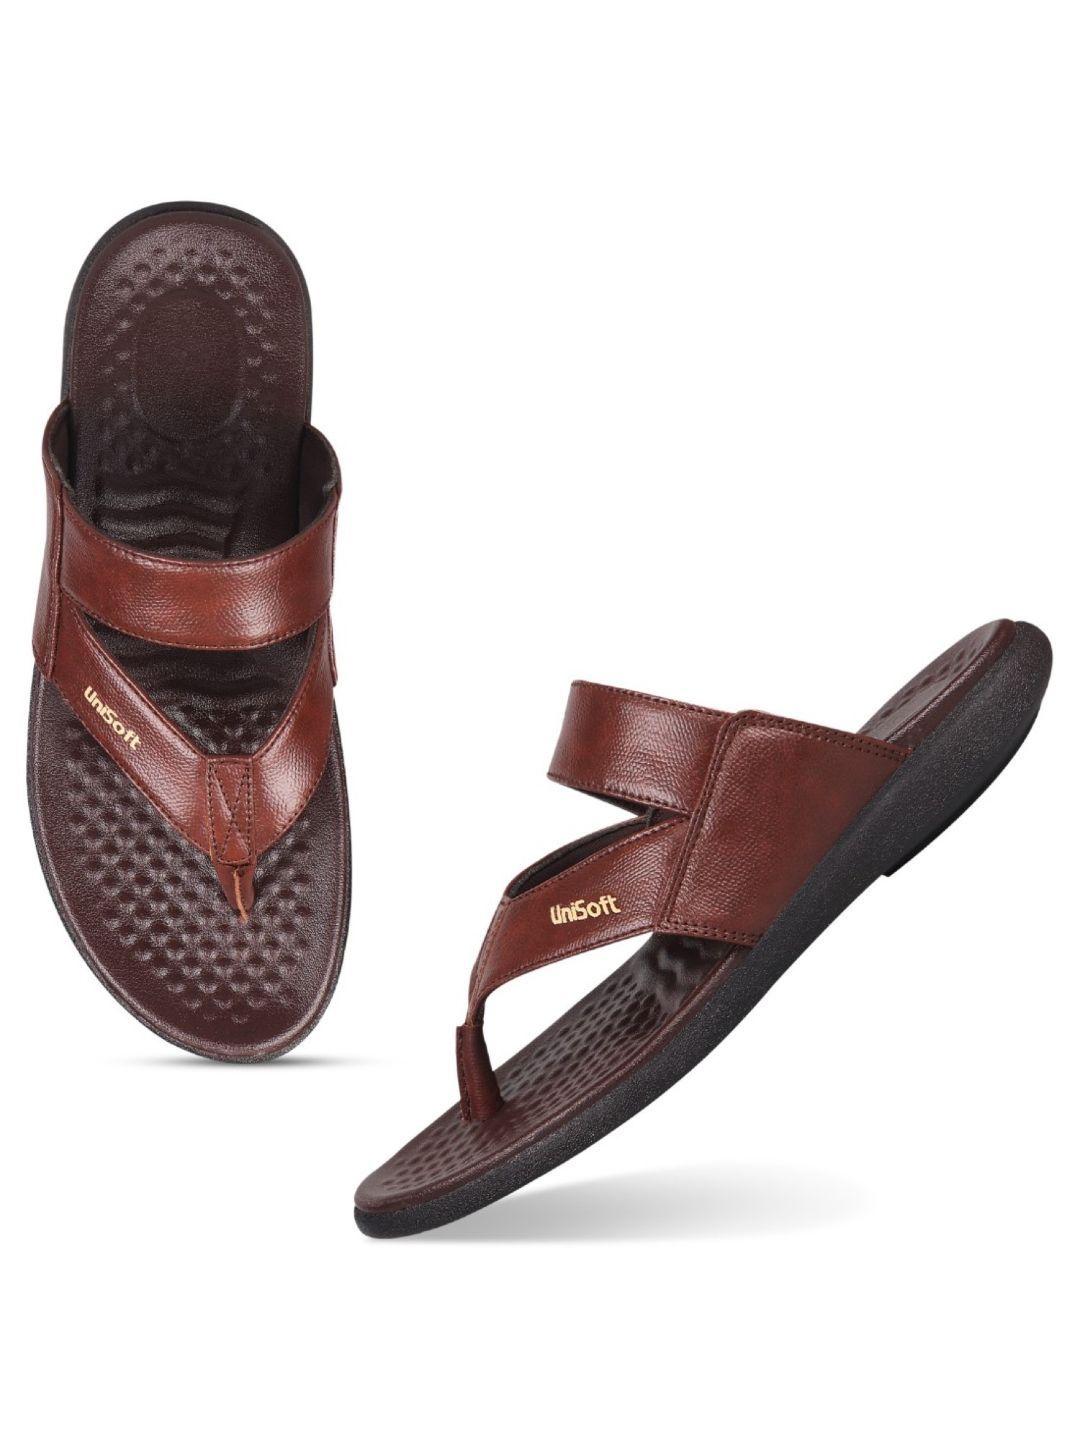 unistar men open toe comfort sandals